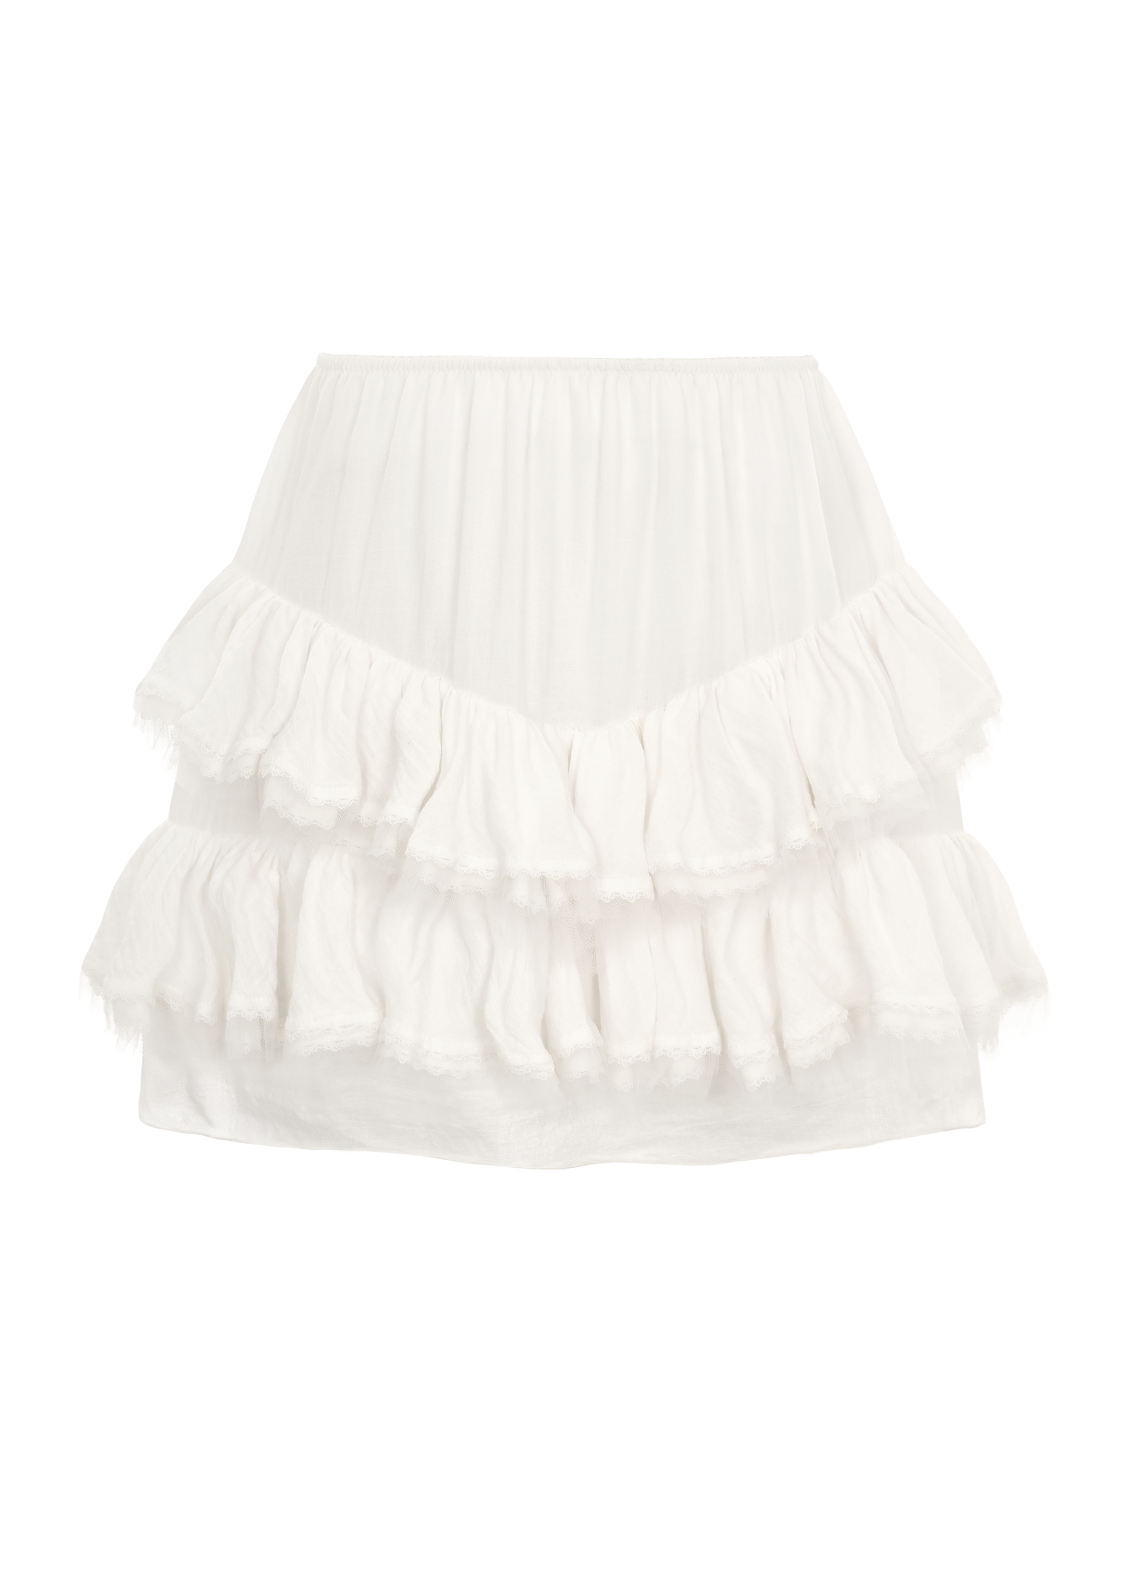 Ruffled skirt in white